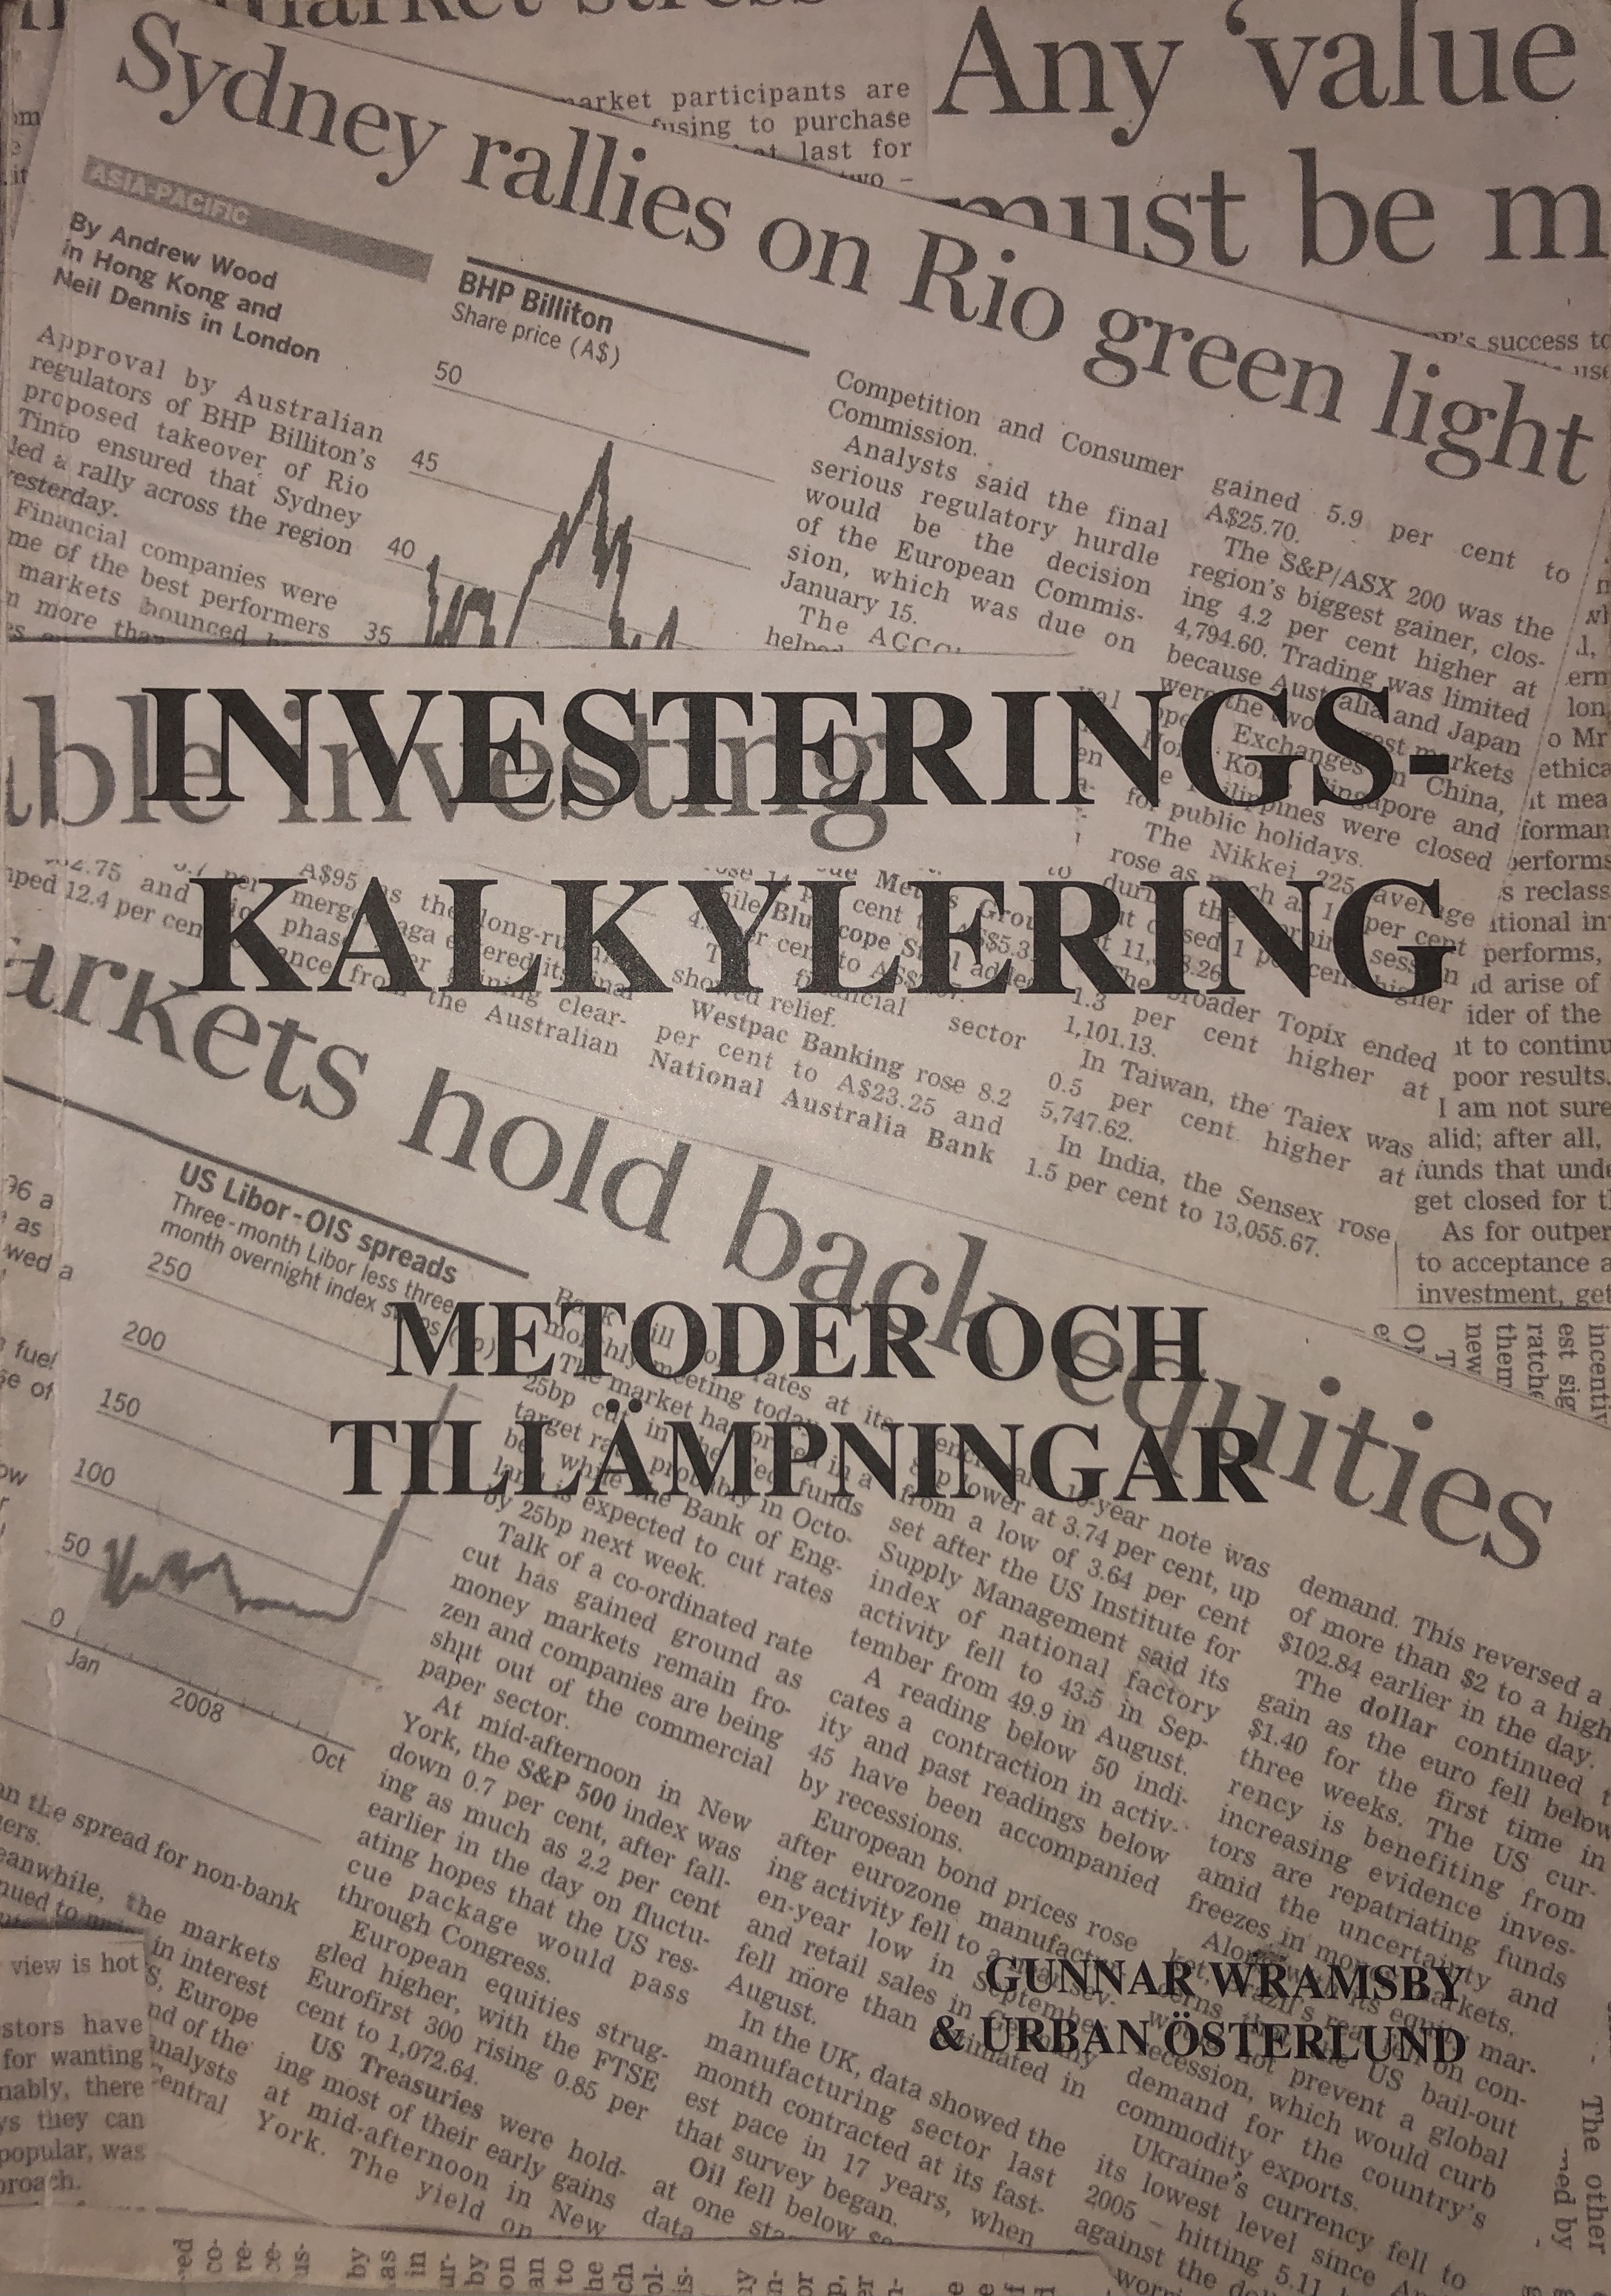 Investeringskalkylering: metoder och tillämpningar; Gunnar Wramsby, Urban Österlund, Gunnar Wramsby Urban Österlund; 2009